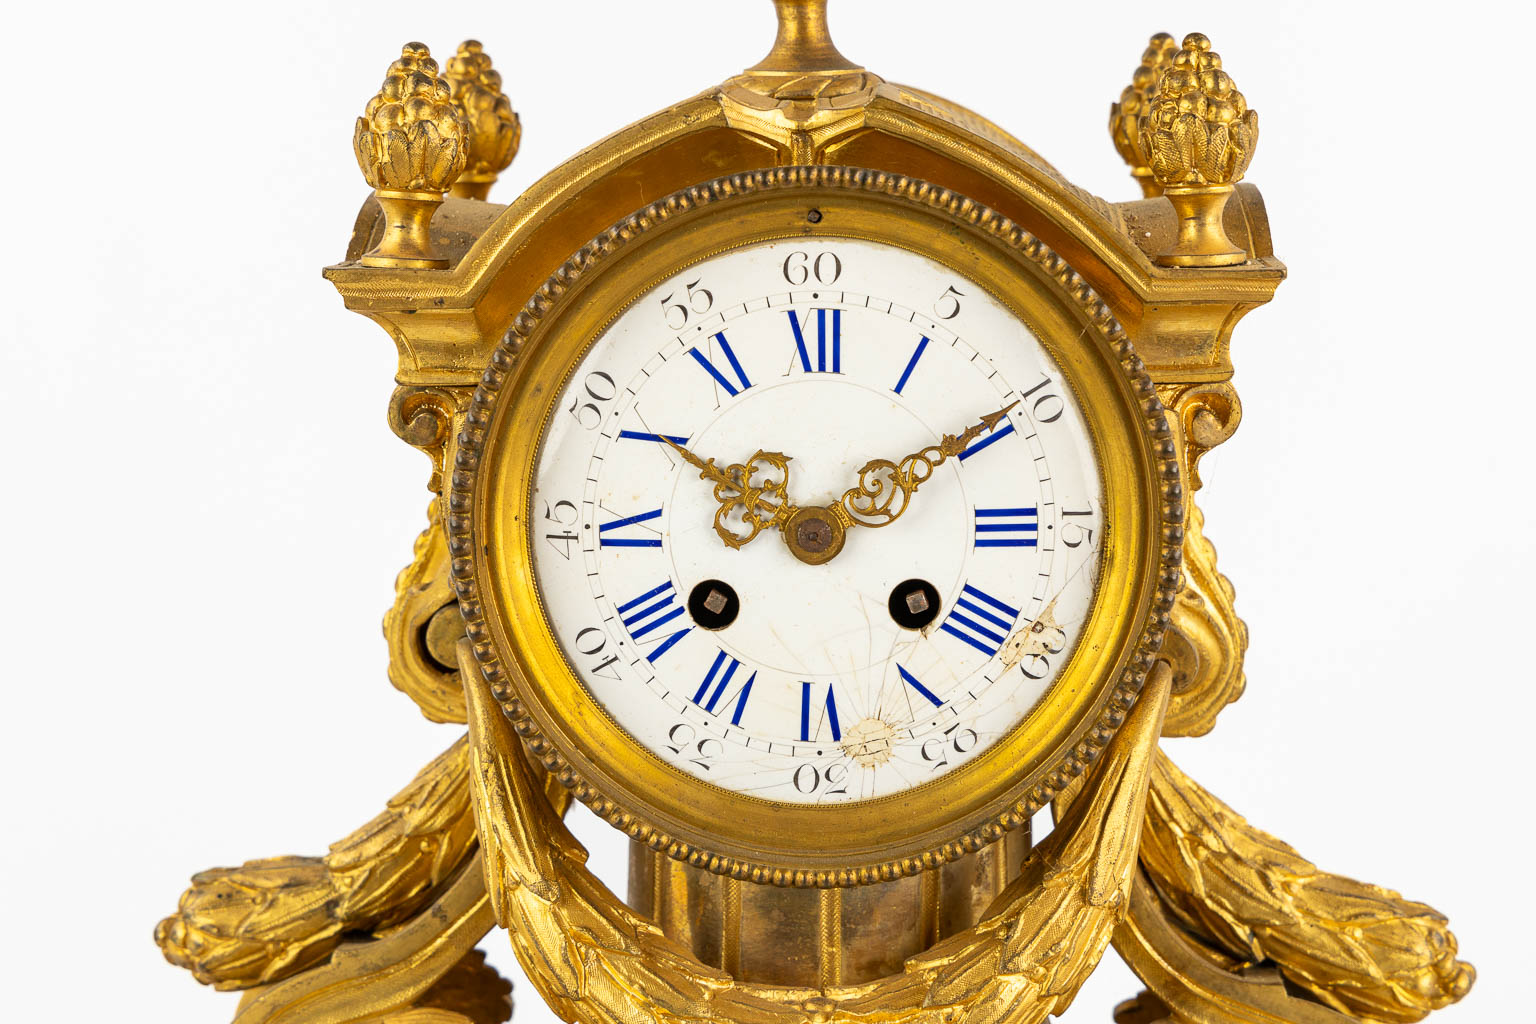 A three-piece mantle garniture clock and candelabra, gilt bronze. 19th C. (L:20 x W:32 x H:43 cm)